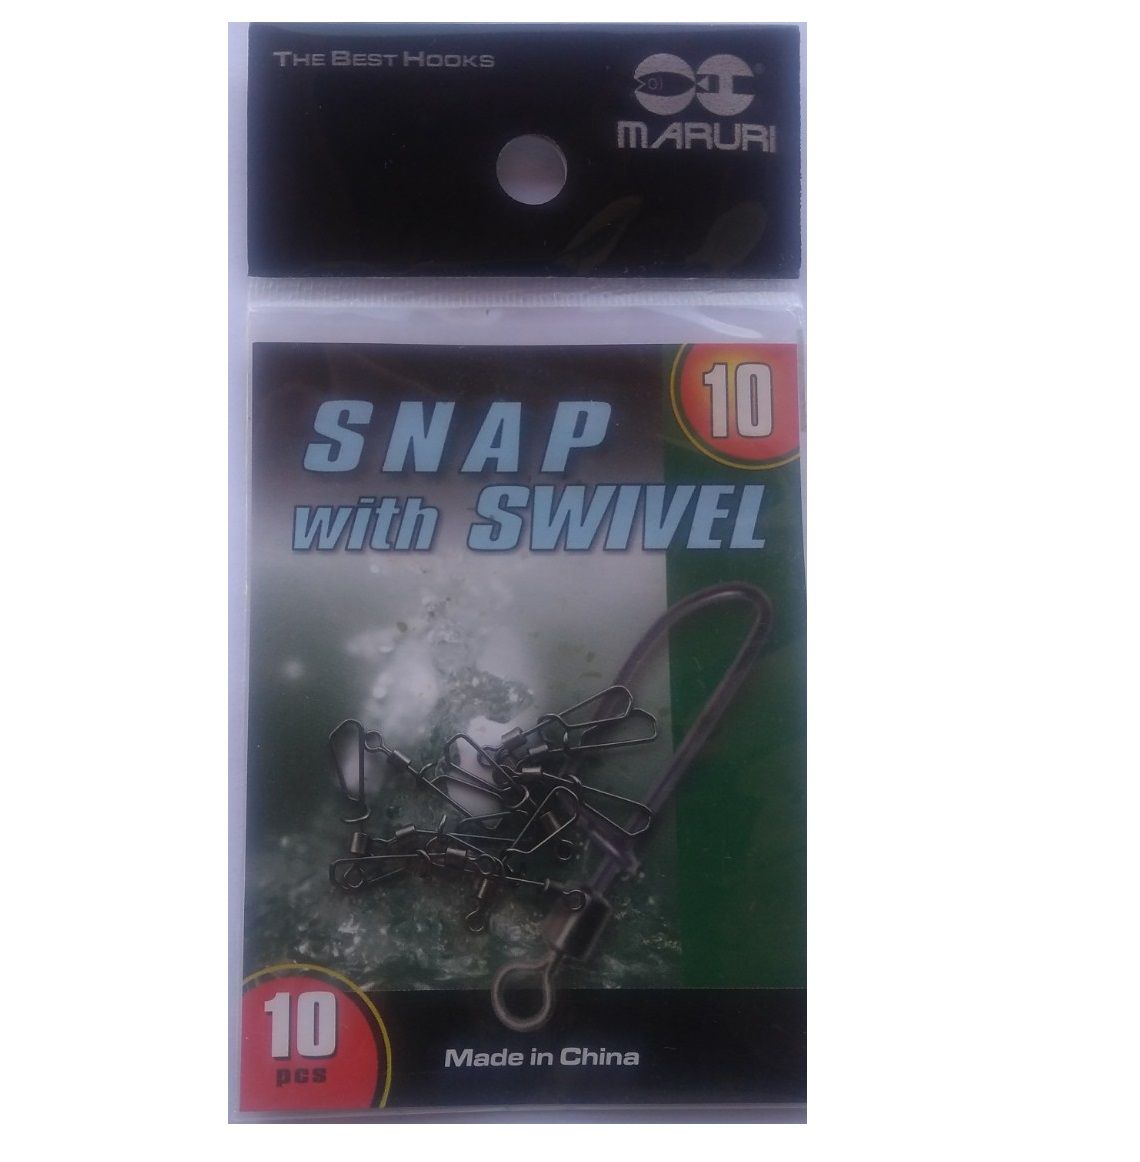 Snap Giratório Maruri Nº 10 (1,9cm) Black Nickel - 10 Peças - Life Pesca - Sua loja de Pesca, Camping e Lazer